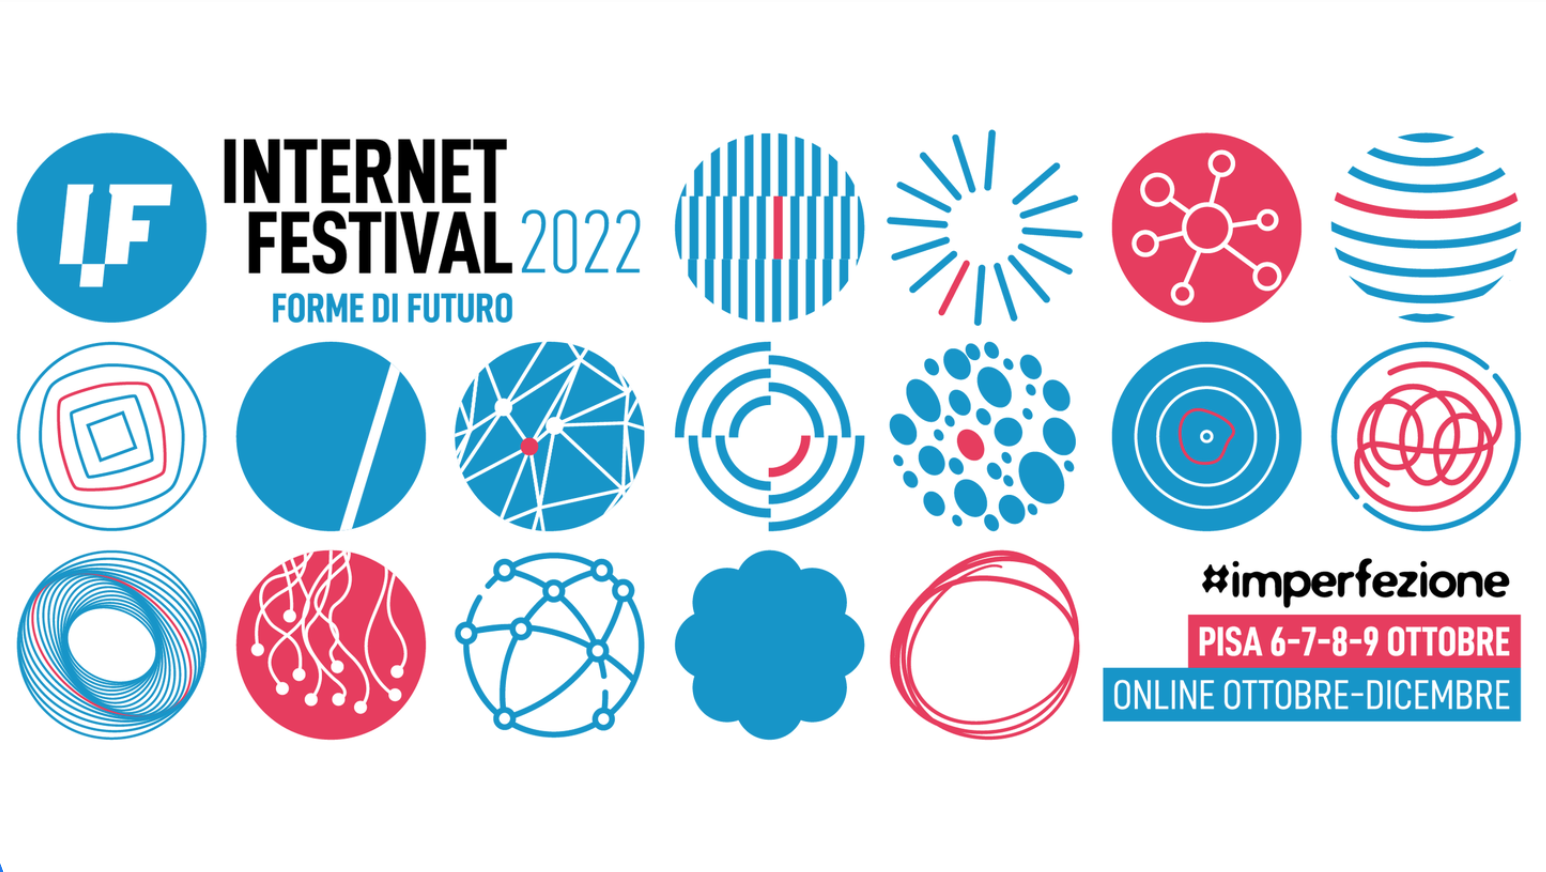 Internet festival 2022 Pisa